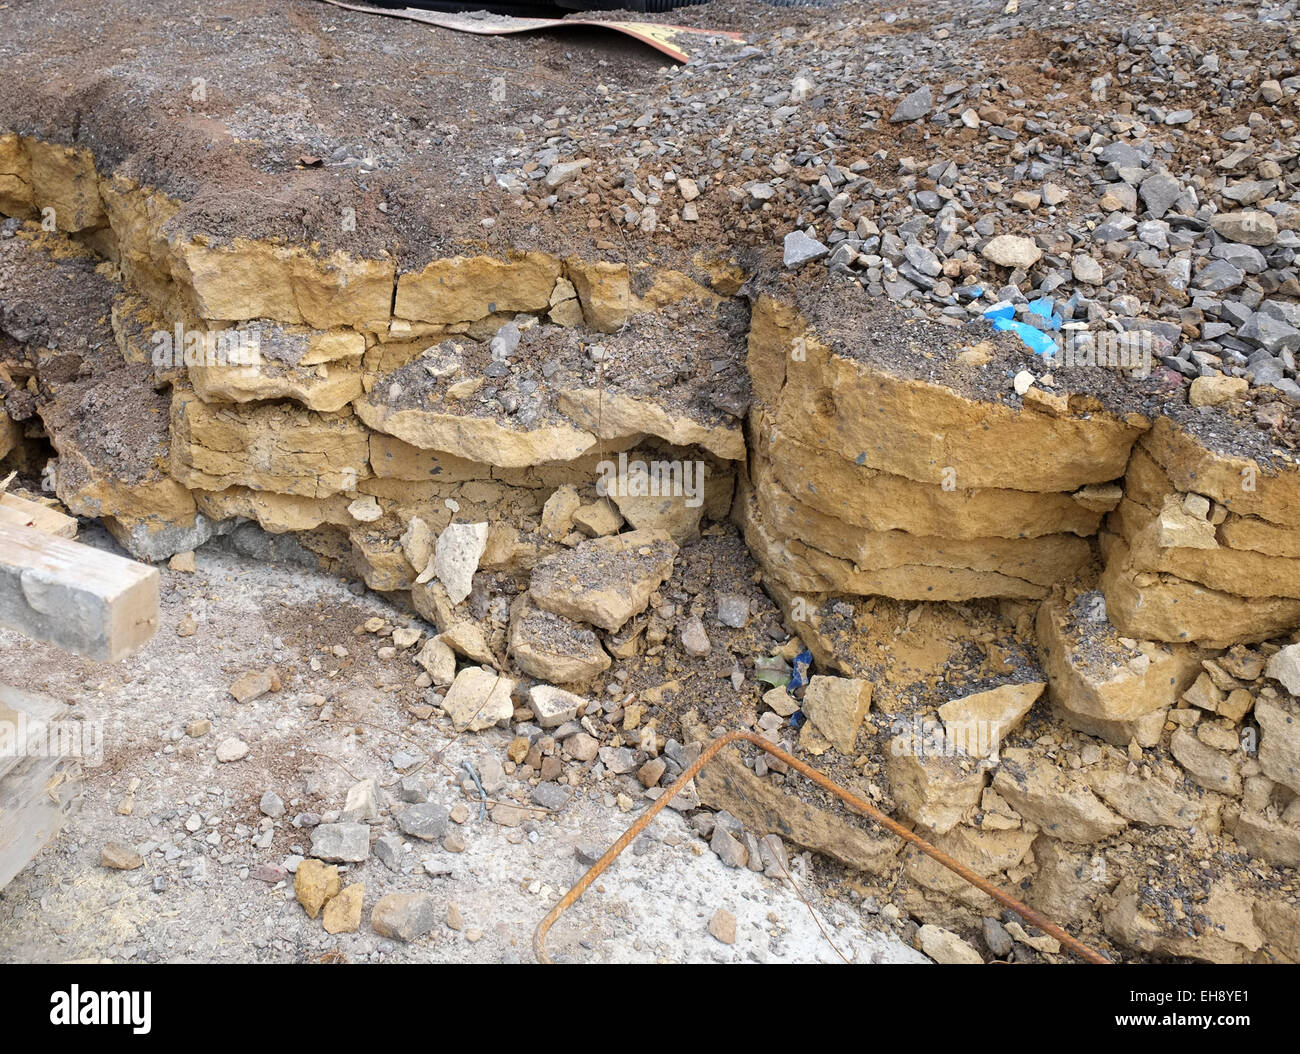 Pierre de Bath de matières premières dans le côté d'une excavation, montrant la rupture de nature du sol. 6 mars 2015 Banque D'Images